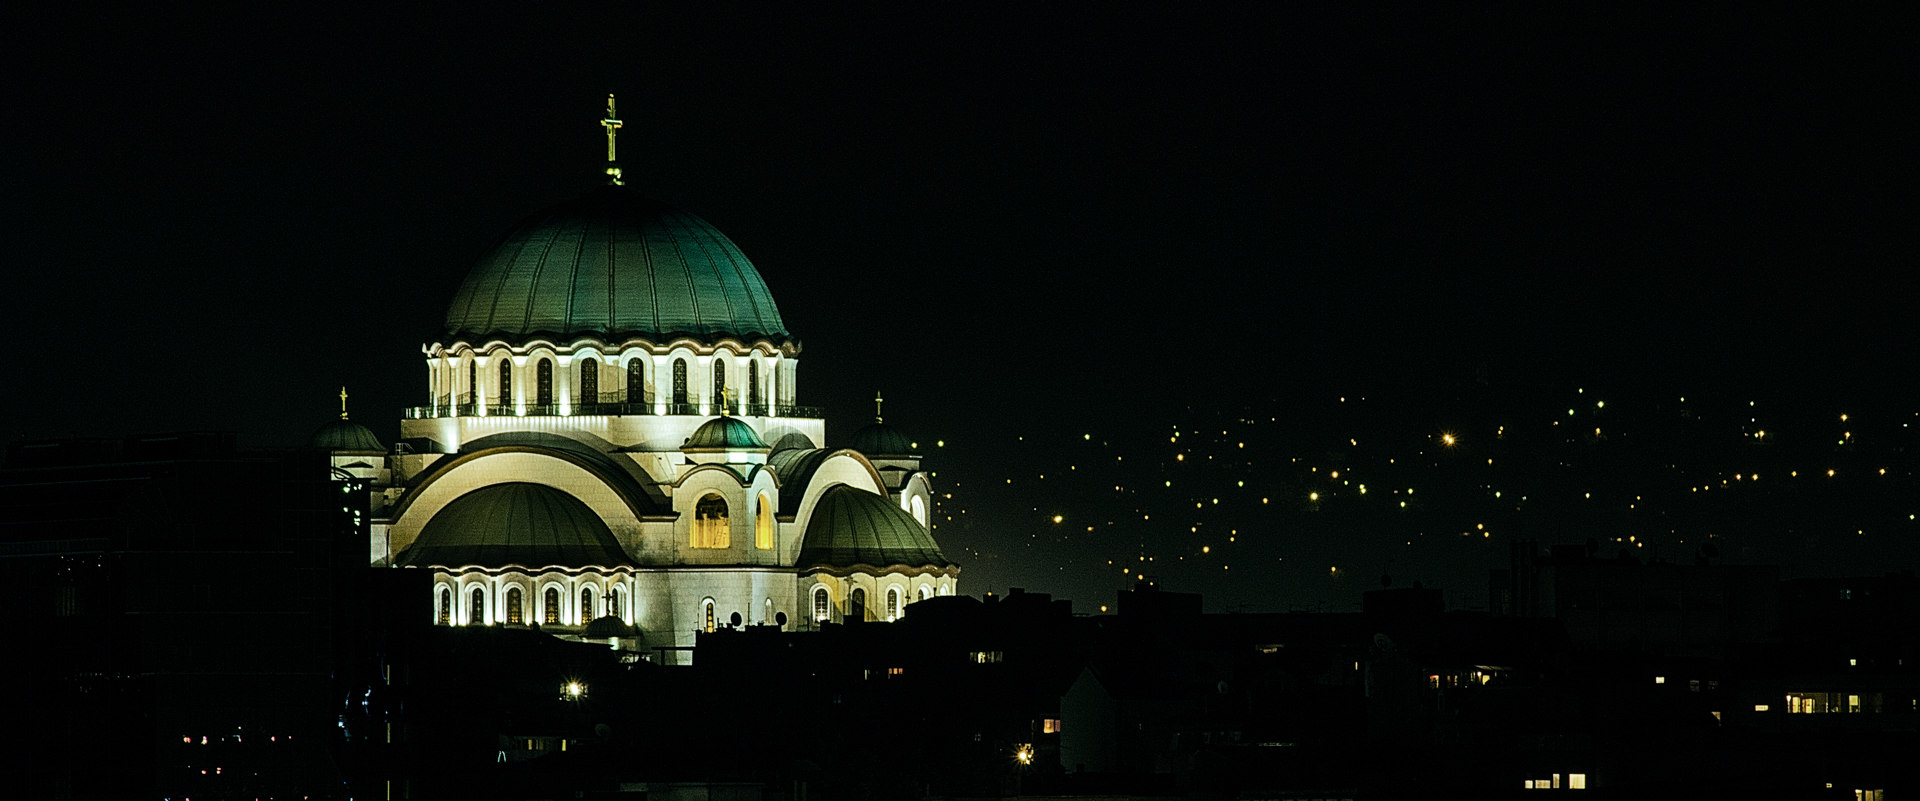 Đền thờ Thánh Sava là một trong những điện thời Chính thống lớn nhất.